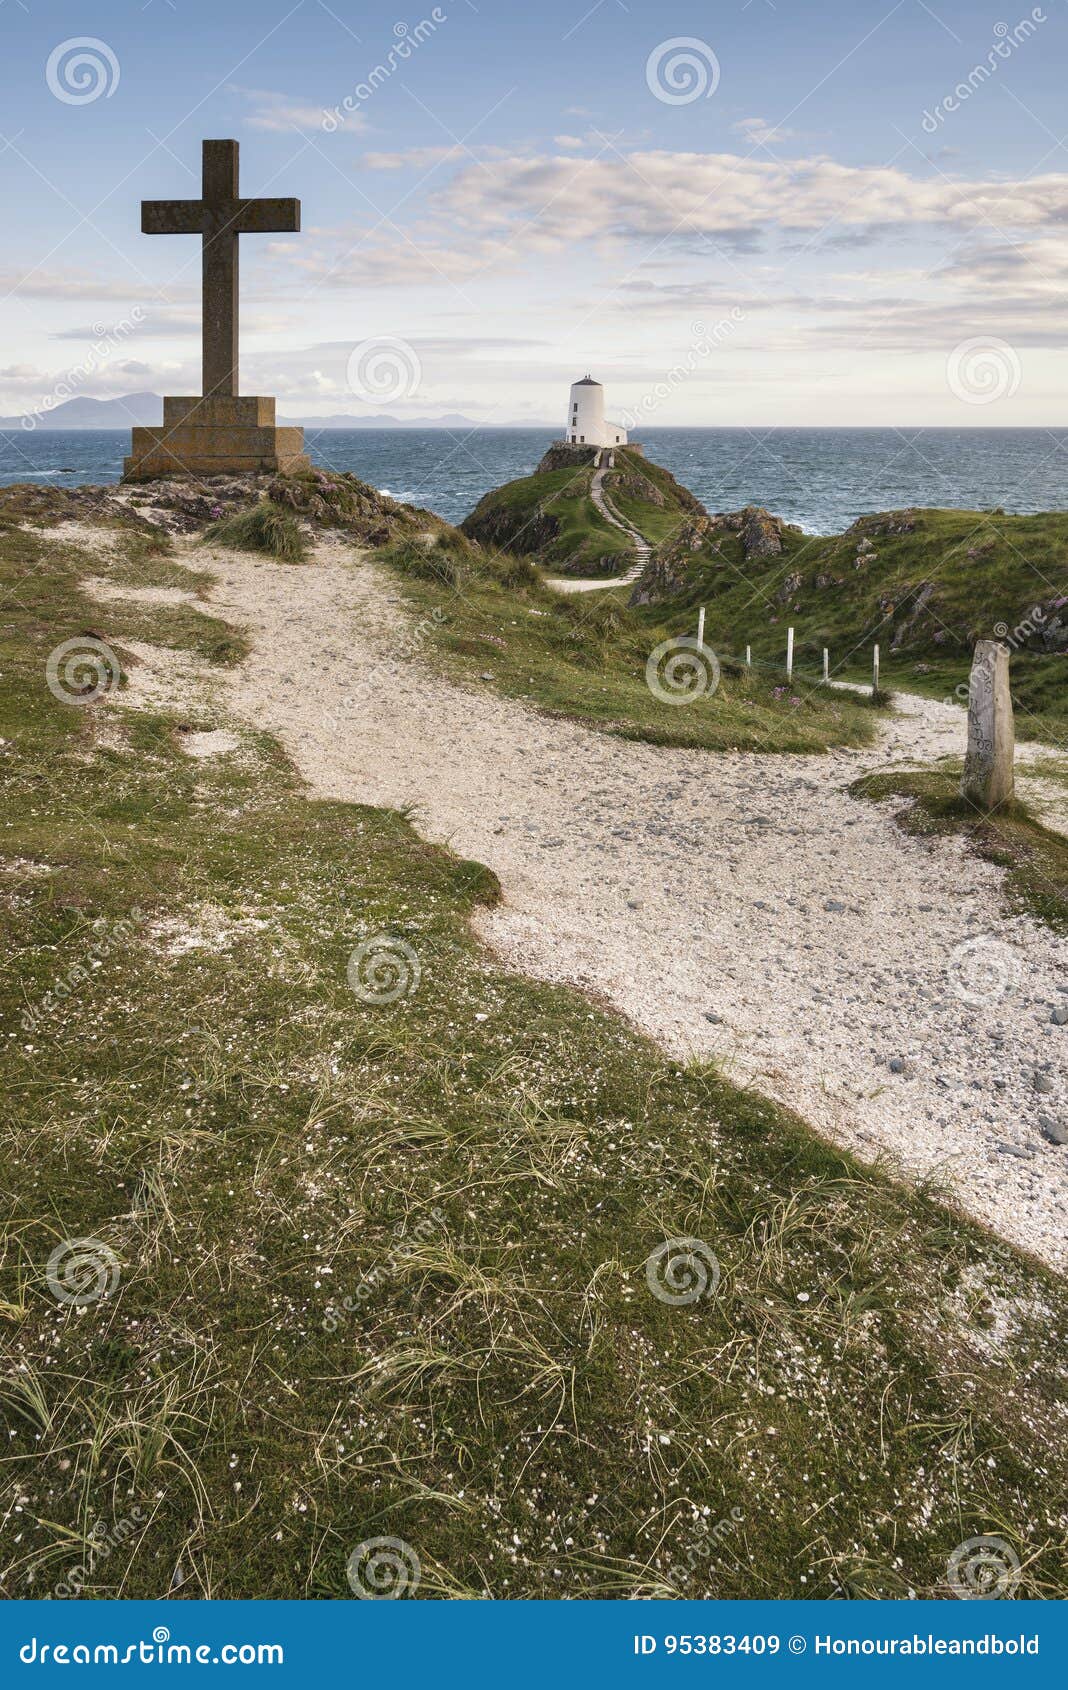 cross in landscape of ynys llanddwyn island with twr mawr lighthouse in background with blue sky